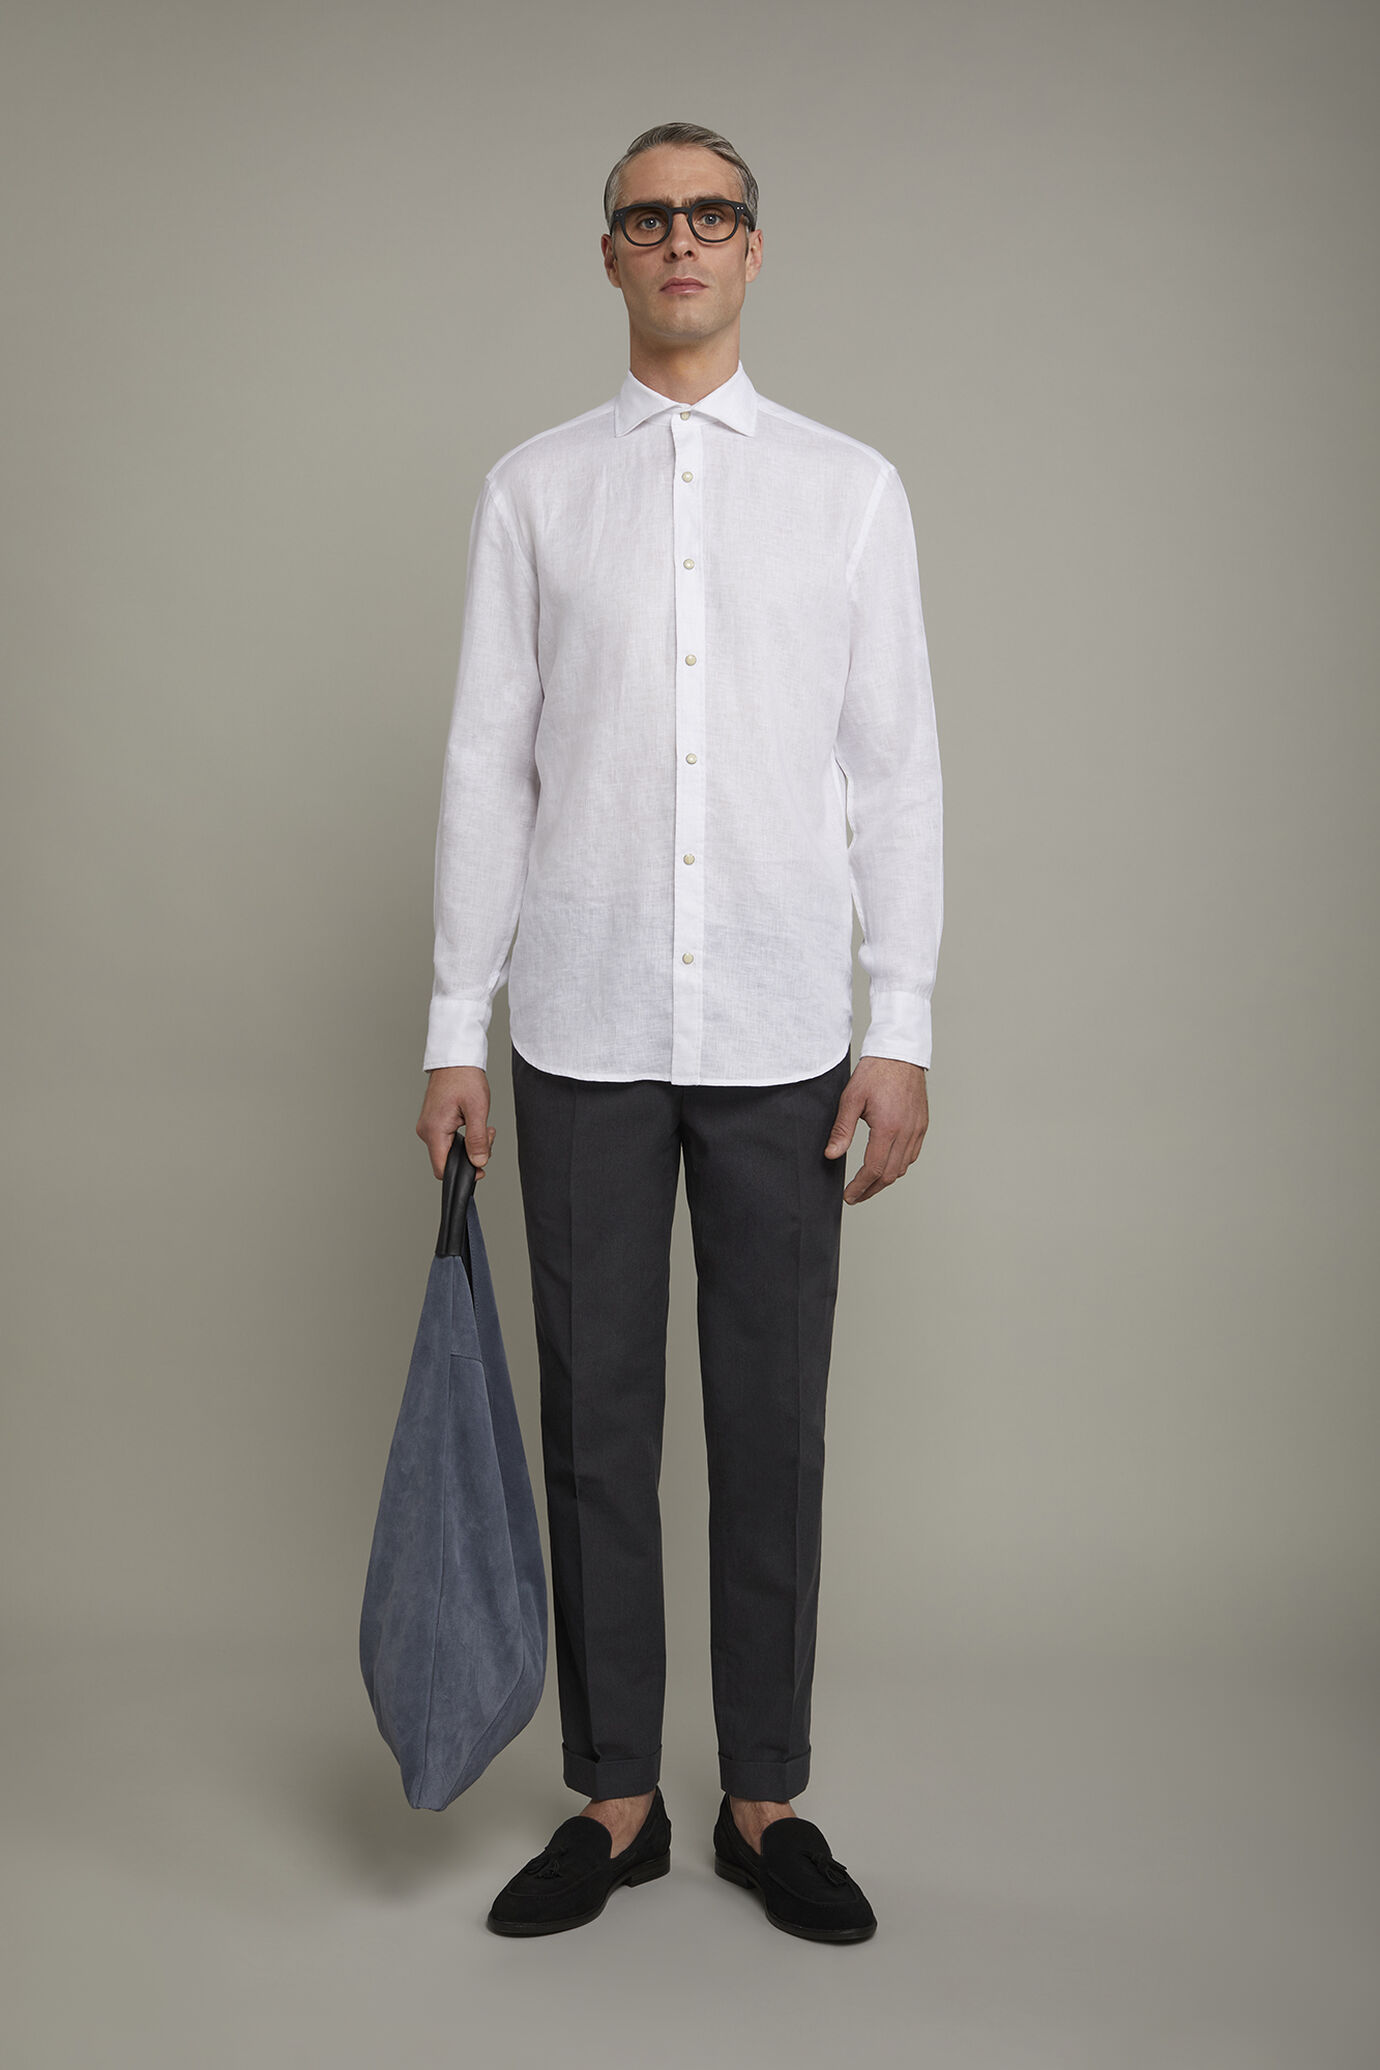 Camicia casual uomo collo classico 100% lino comfort fit image number 0